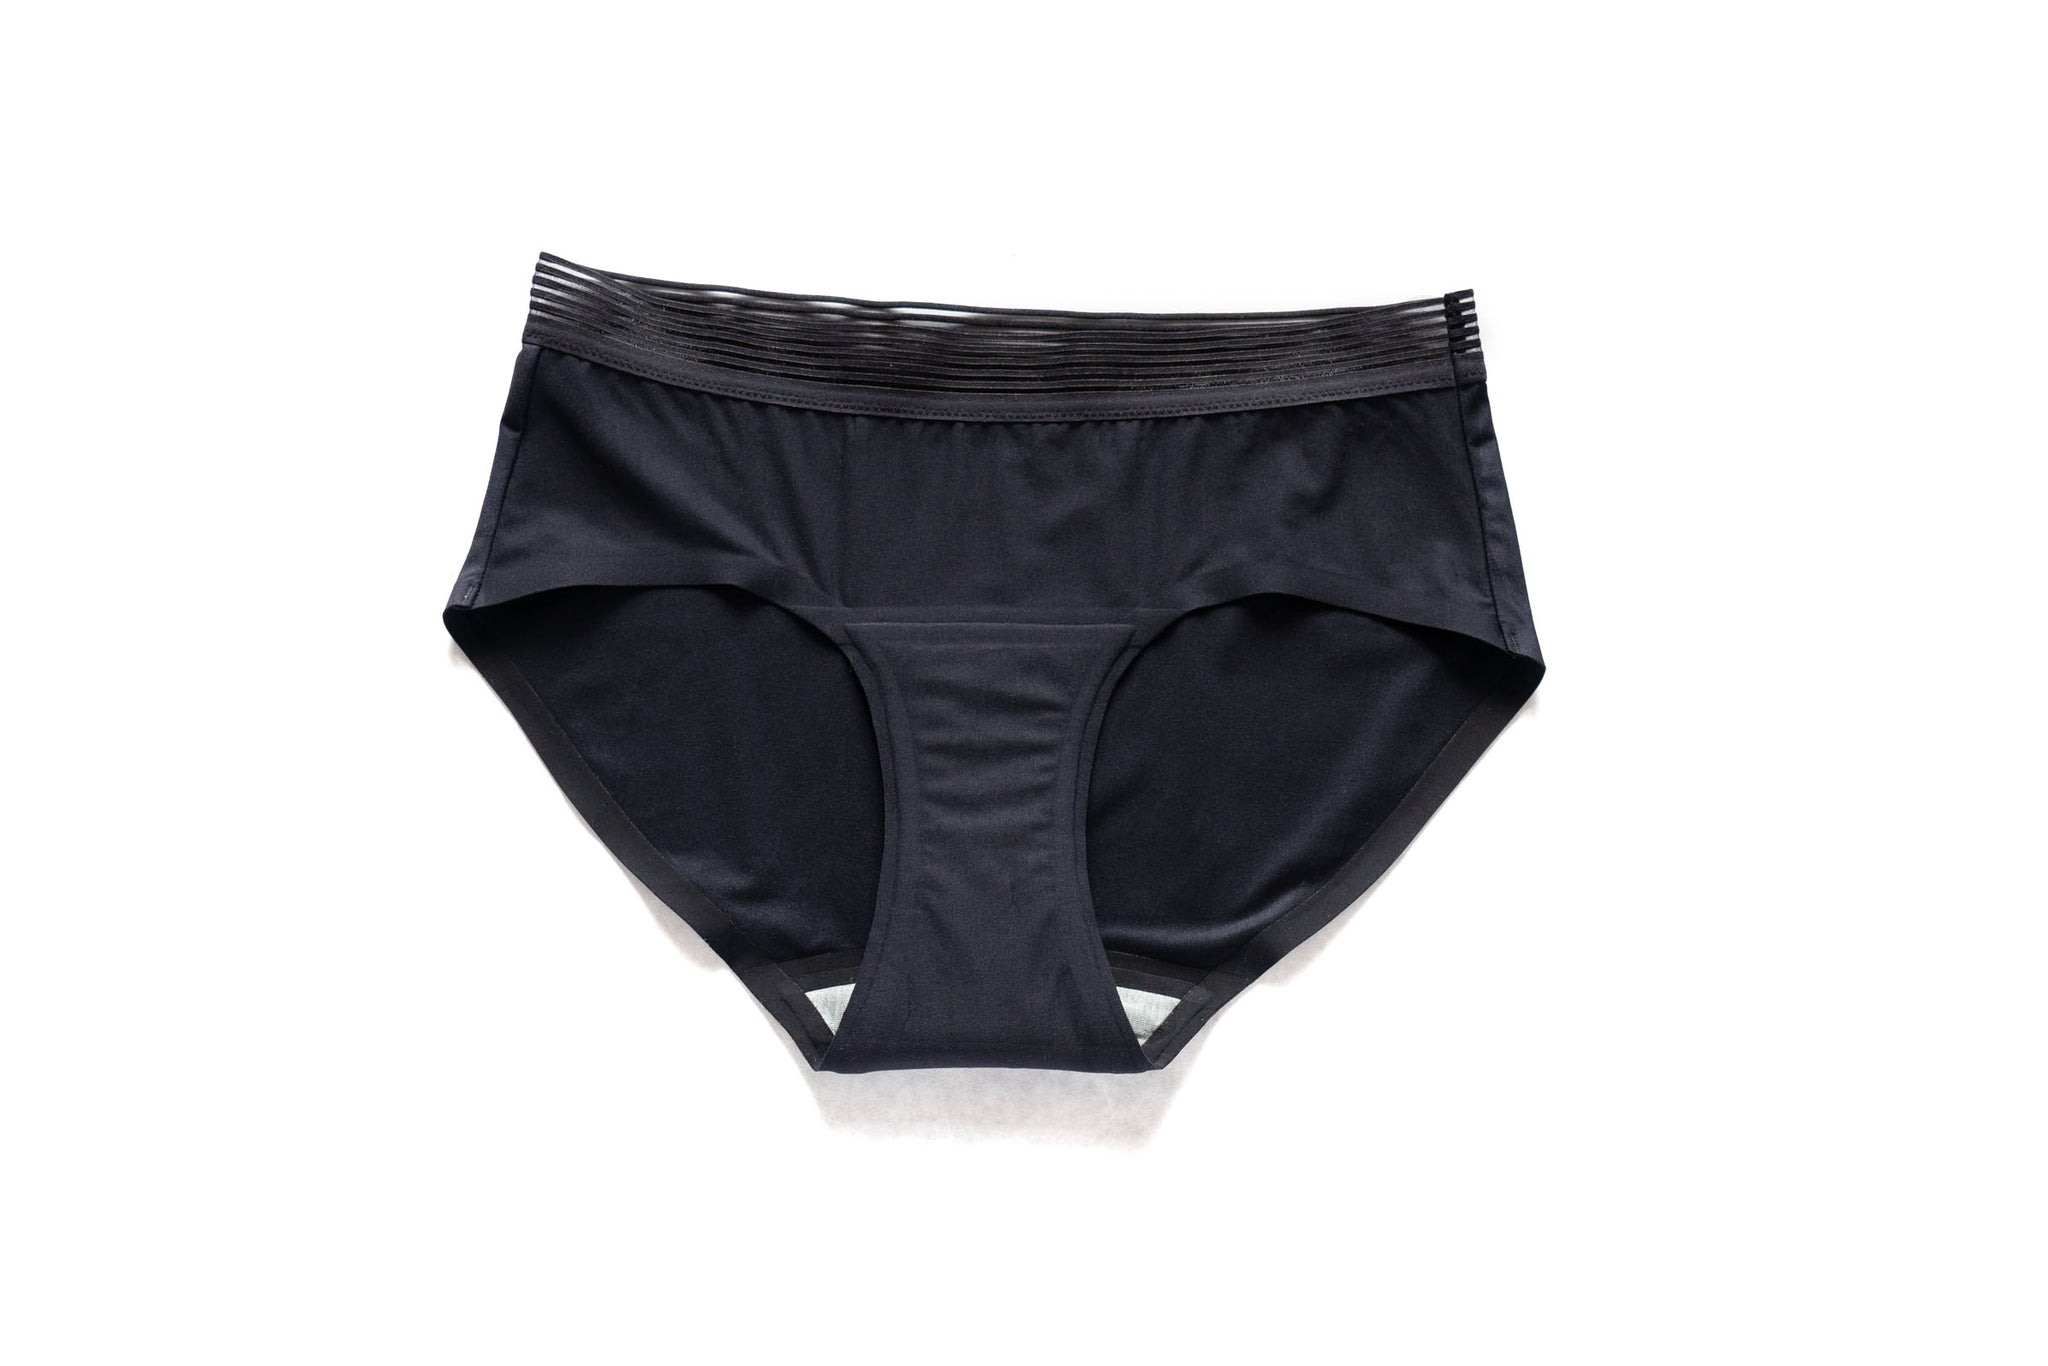  THINX Modal Cotton Boyshort Period Underwear for Women